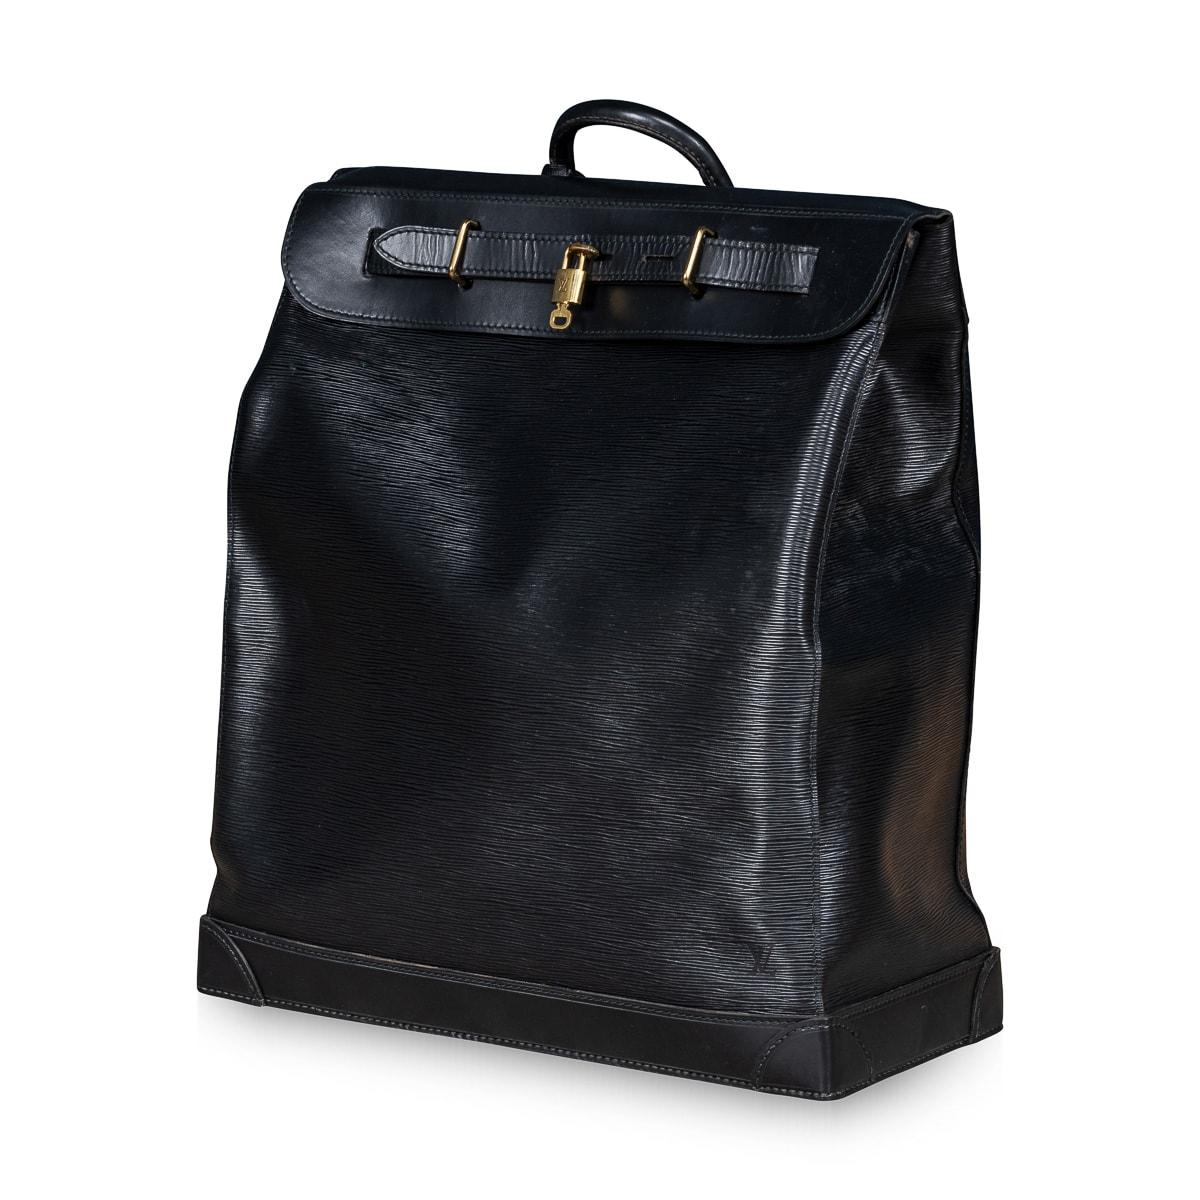 Un grand sac de voyage Louis Vuitton en cuir Epi noir, fabriqué en France dans le dernier quart du 20e siècle. Les sacs à vapeur sont produits par Louis Vuitton depuis plus de 120 ans. En 1901, l'entreprise lance le sac à vapeur simple en toile et